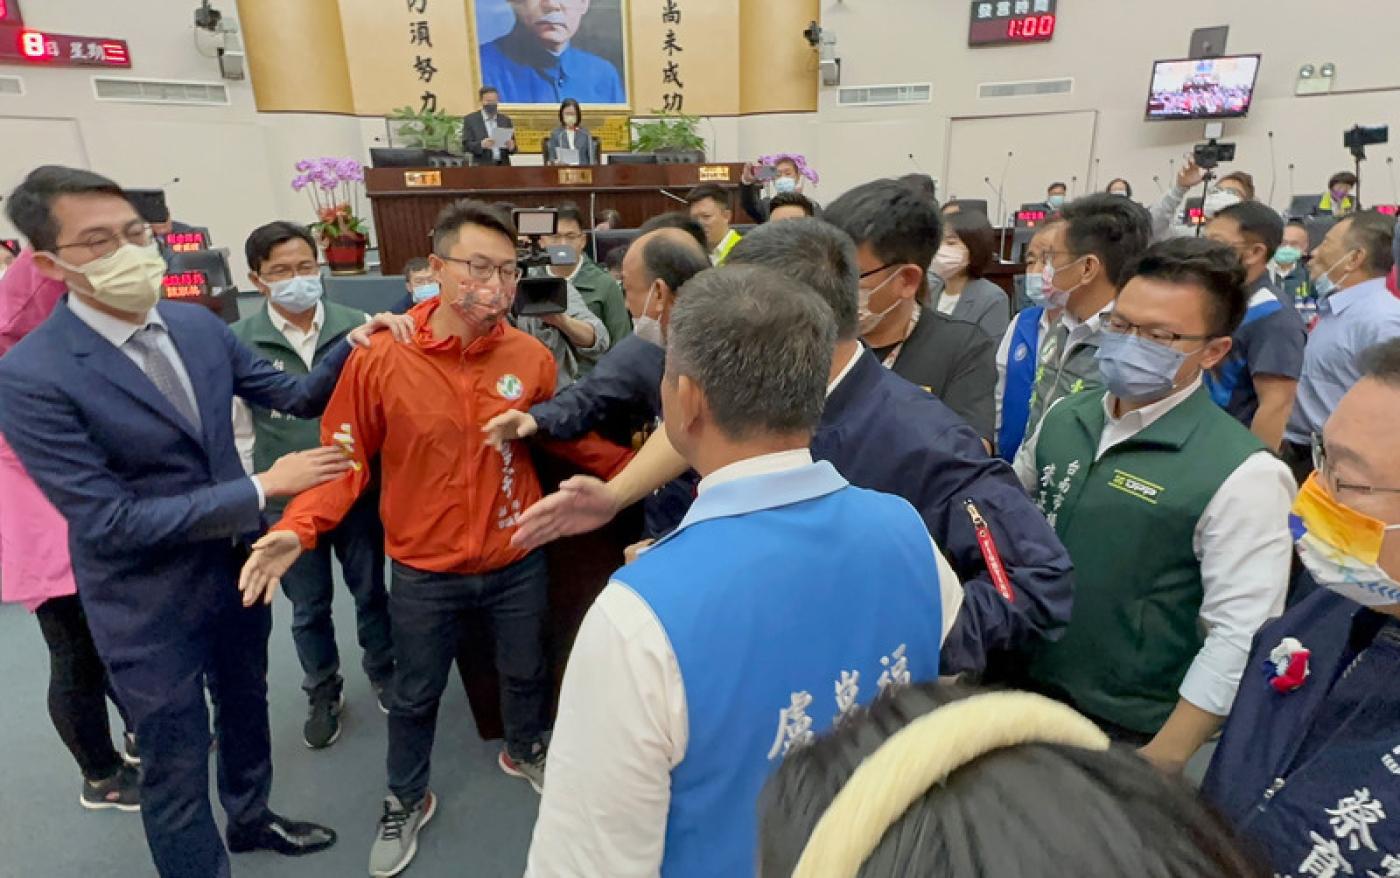 涉入正副議長賄選案的台南市議長邱莉莉8日主持臨時會，國民黨議員盧崑福質疑邱莉莉立場，要求請假 避嫌，且衝上主席台，但中途被眾人攔下，引發推擠拉址。中央社